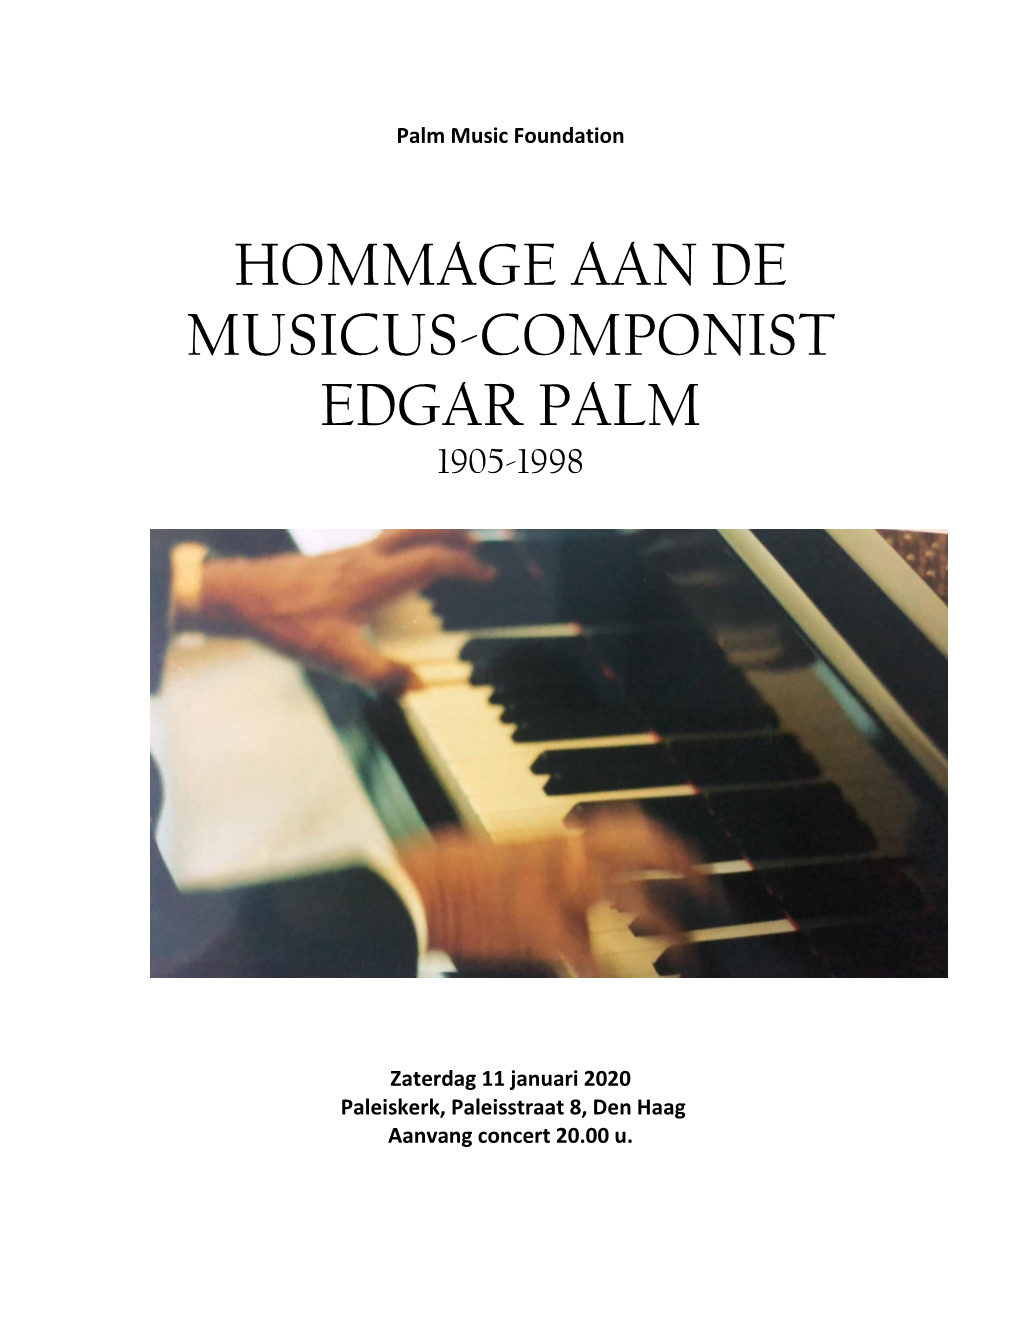 Hommage Aan De Musicus-Componist Edgar Palm 1905-1998